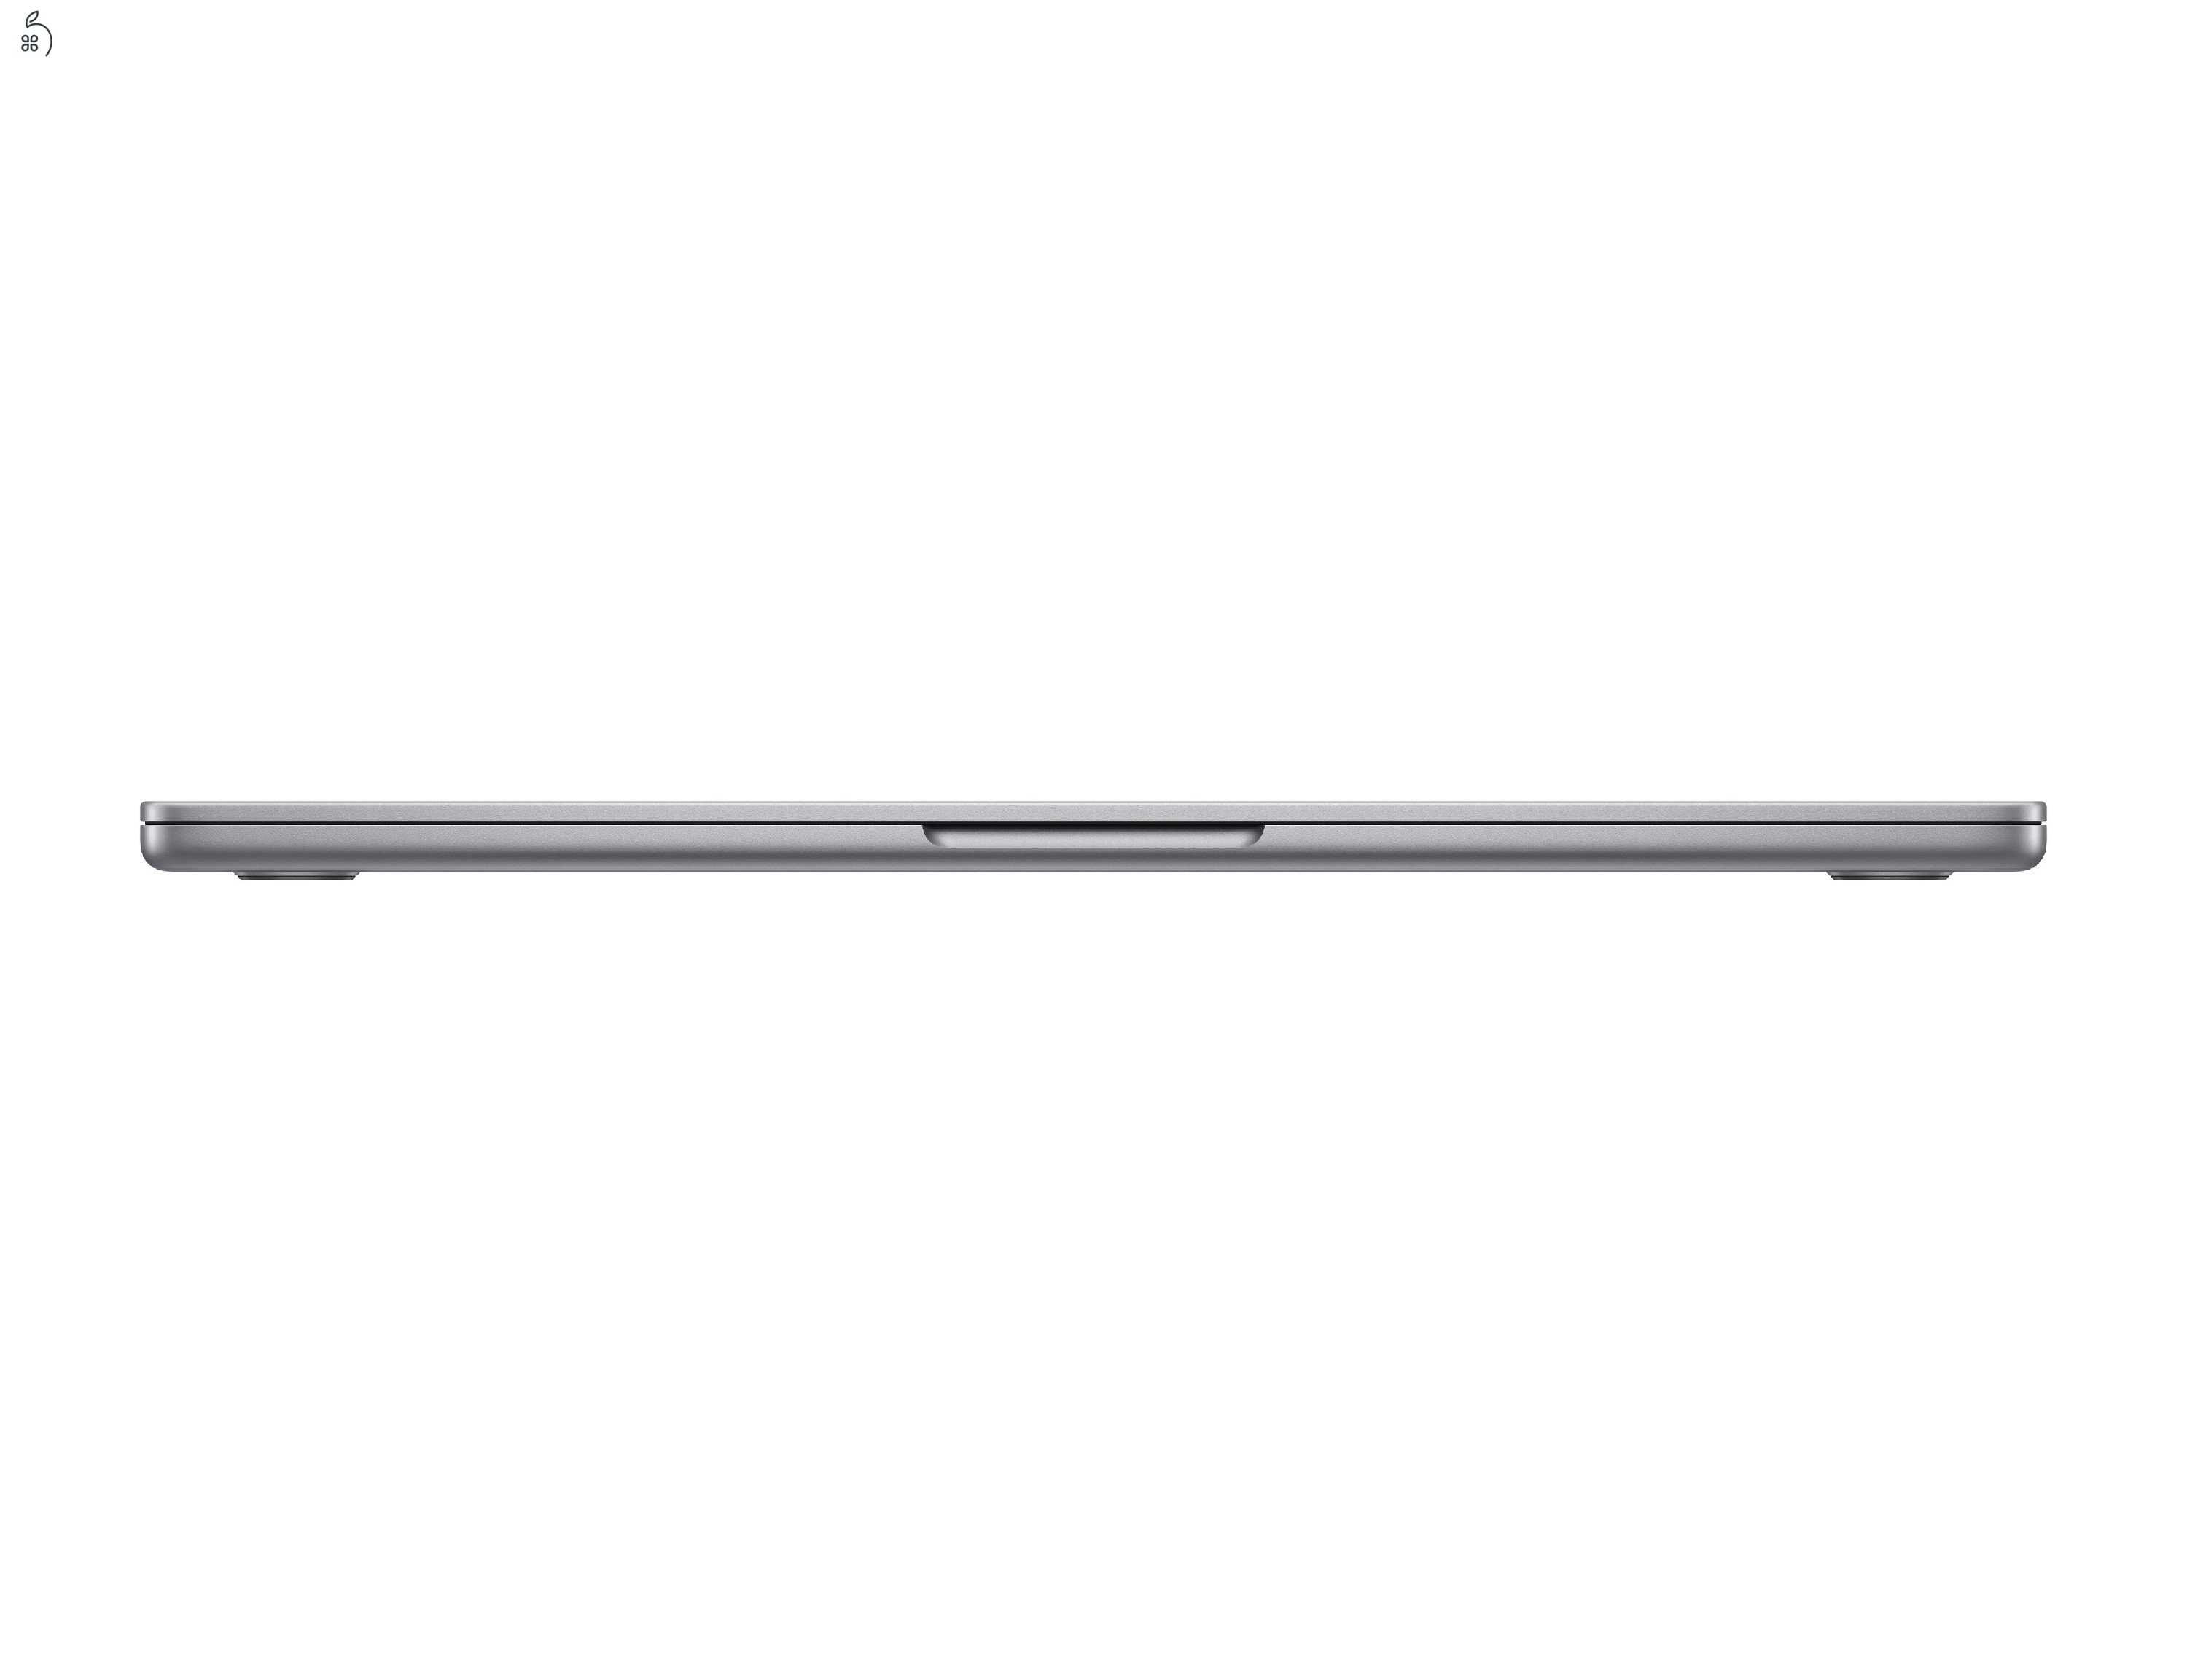 Teljesen új M3-as MacBook Air eladó, iStyle nyugtával, garanciával, minden tartozékkal